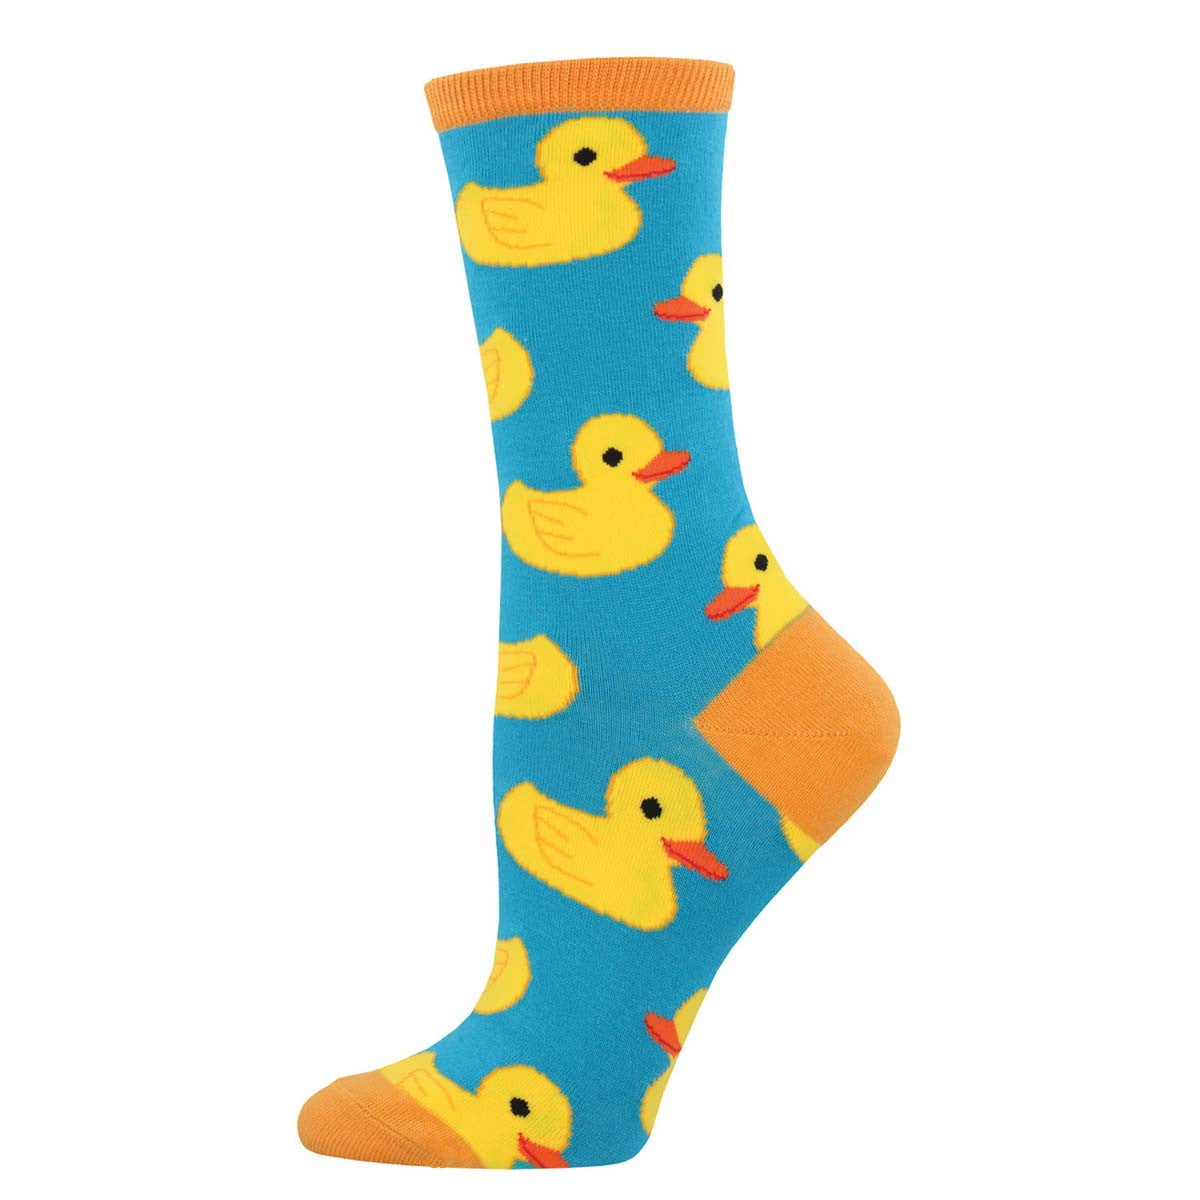 Rubber Ducky Women's Socks